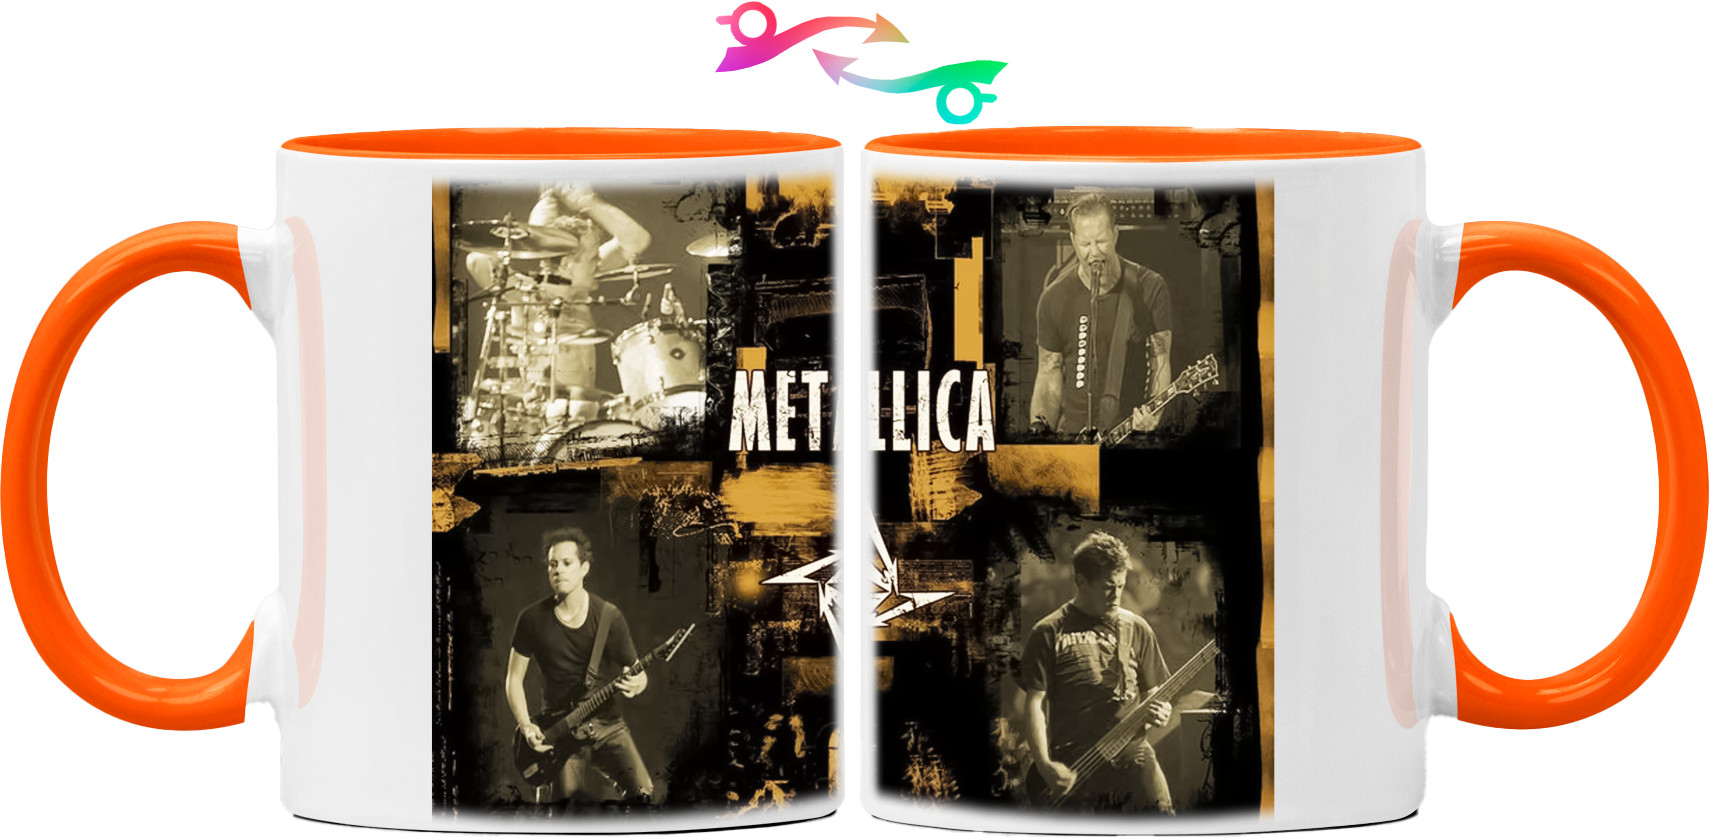 Metallica принт 7